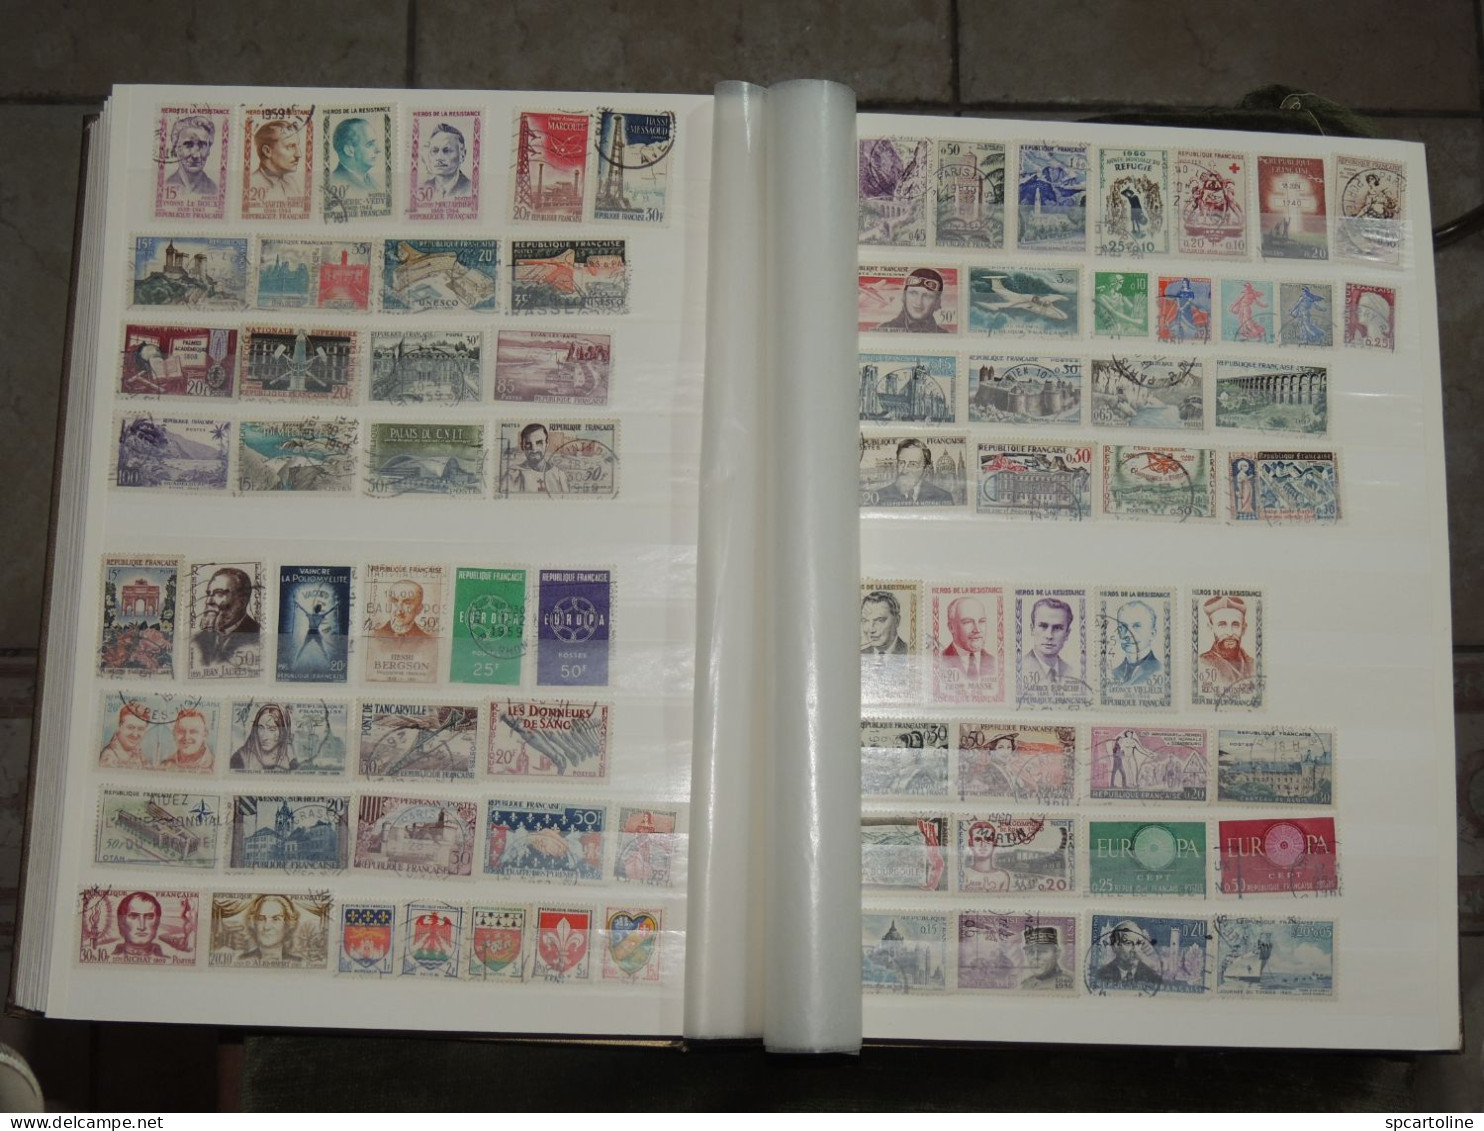 Collezione incompleta Francia area franco 1221 francobolli diversi usati album Leuchttrum 40 p. seminuovo